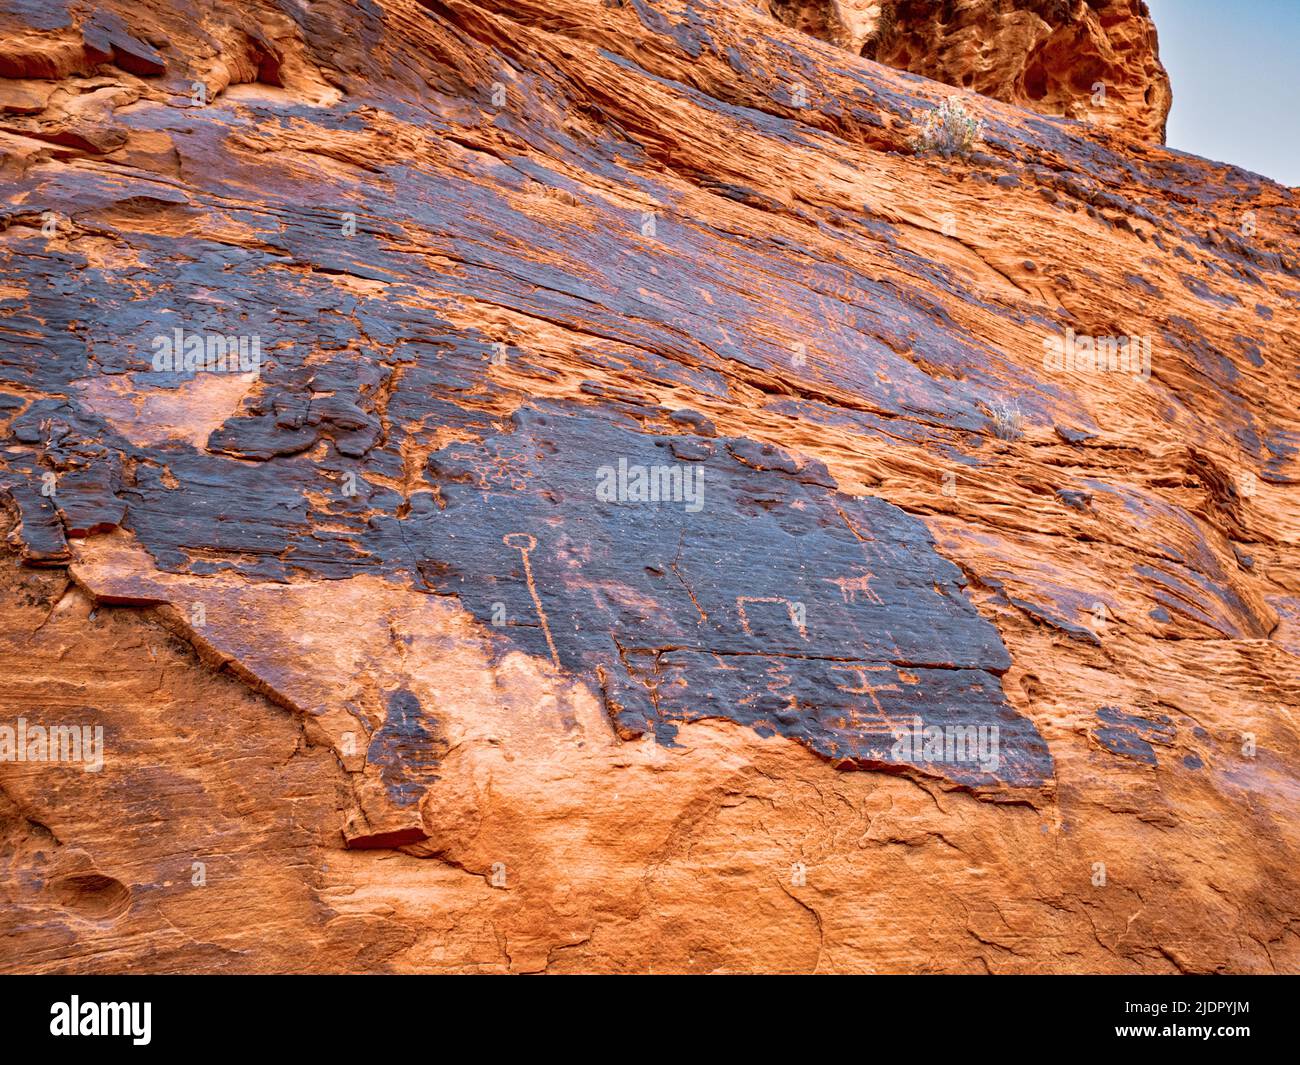 Nahaufnahme von Petroglyphen, die durch Wüstenlack geschnitzt wurden, so dass das rote Gestein des aztekischen Sandsteins durch das Petroglyph Canyon Valley of Fire Nevada leuchtet Stockfoto